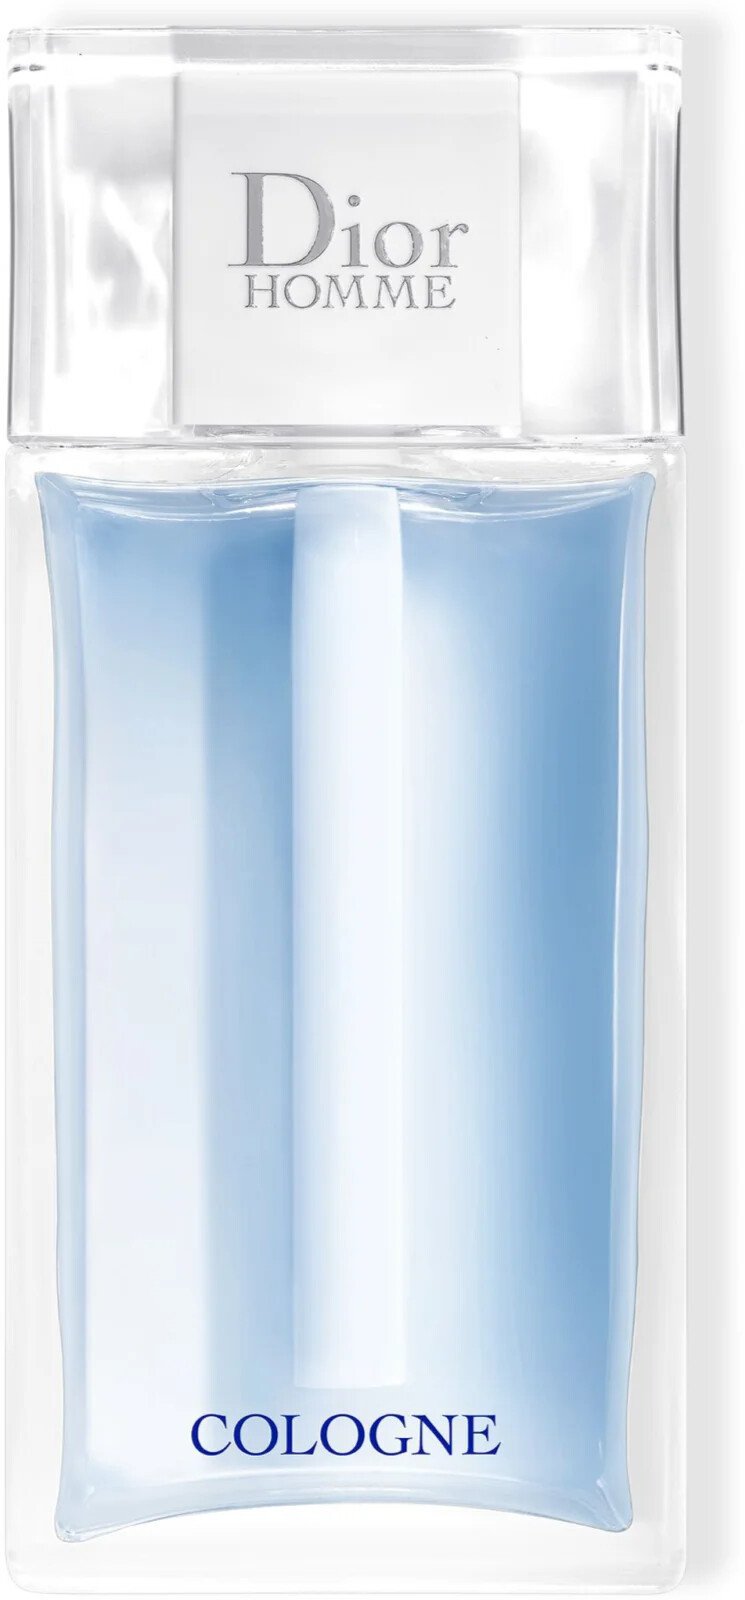 Dior Homme Cologne kolínská voda pro muže  125 ml tester